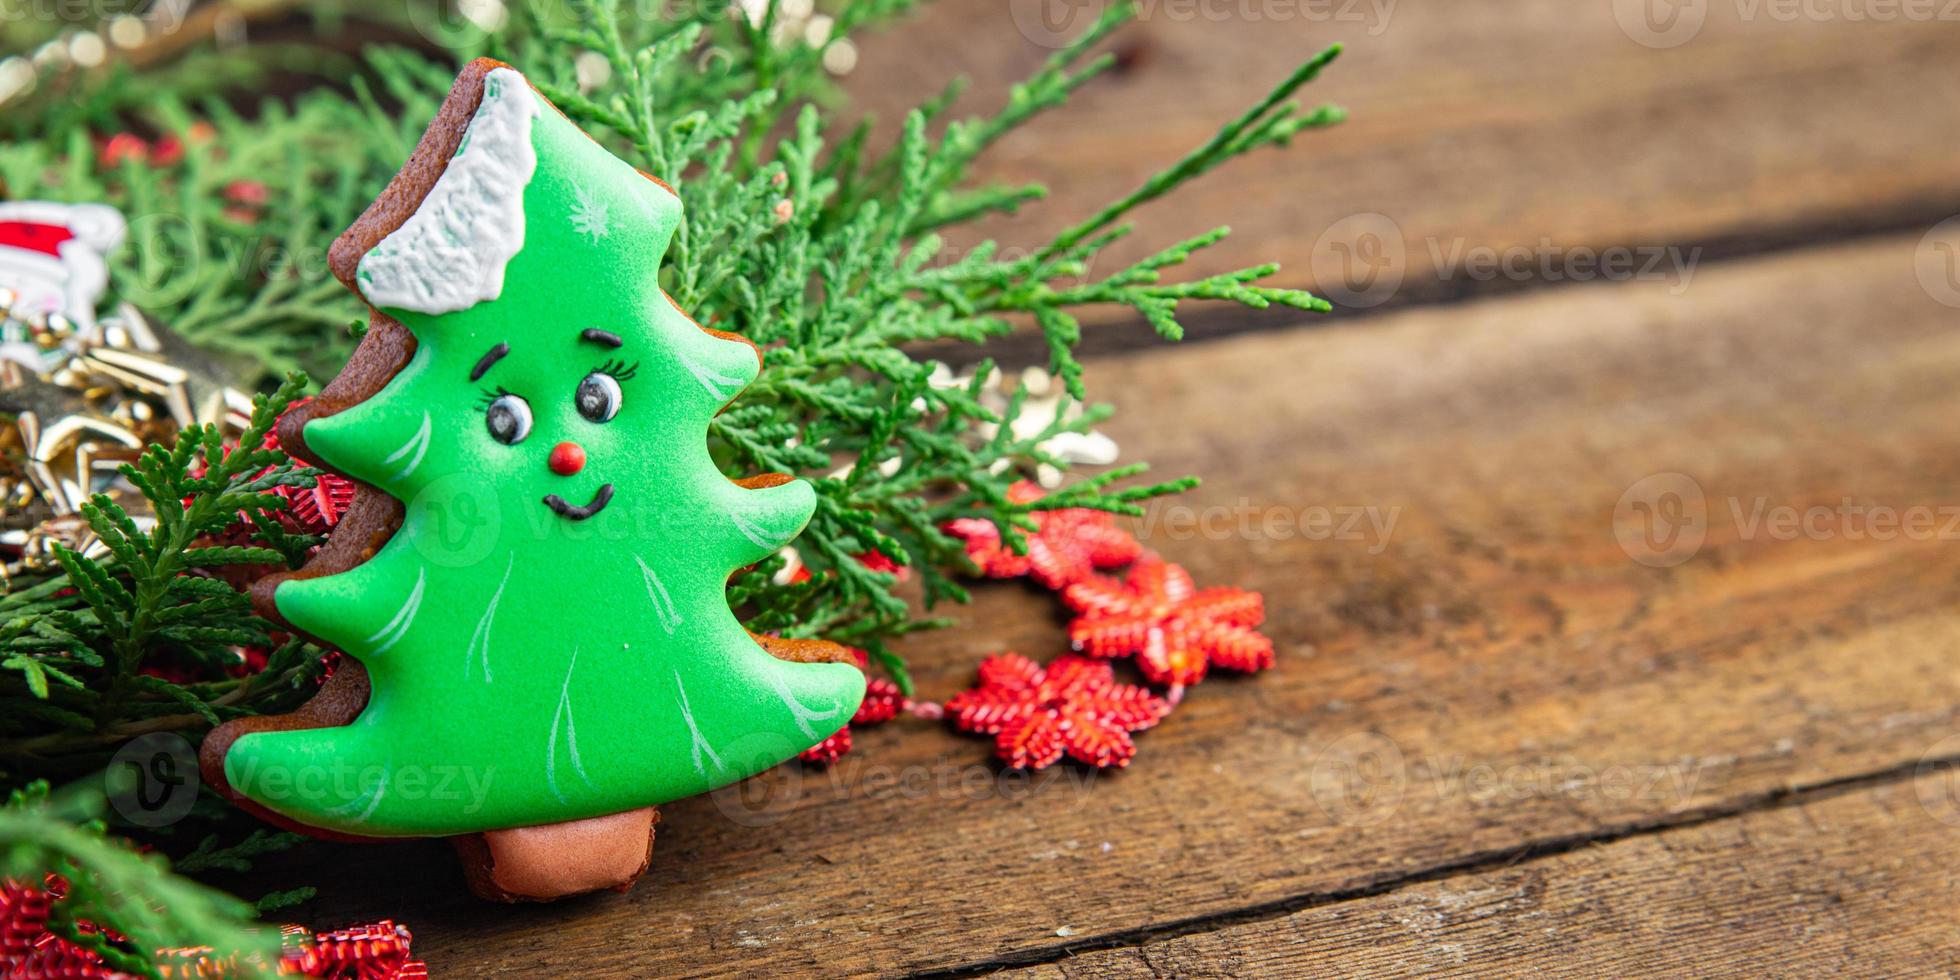 biscoito de biscoito de árvore de natal de gengibre ano novo foto